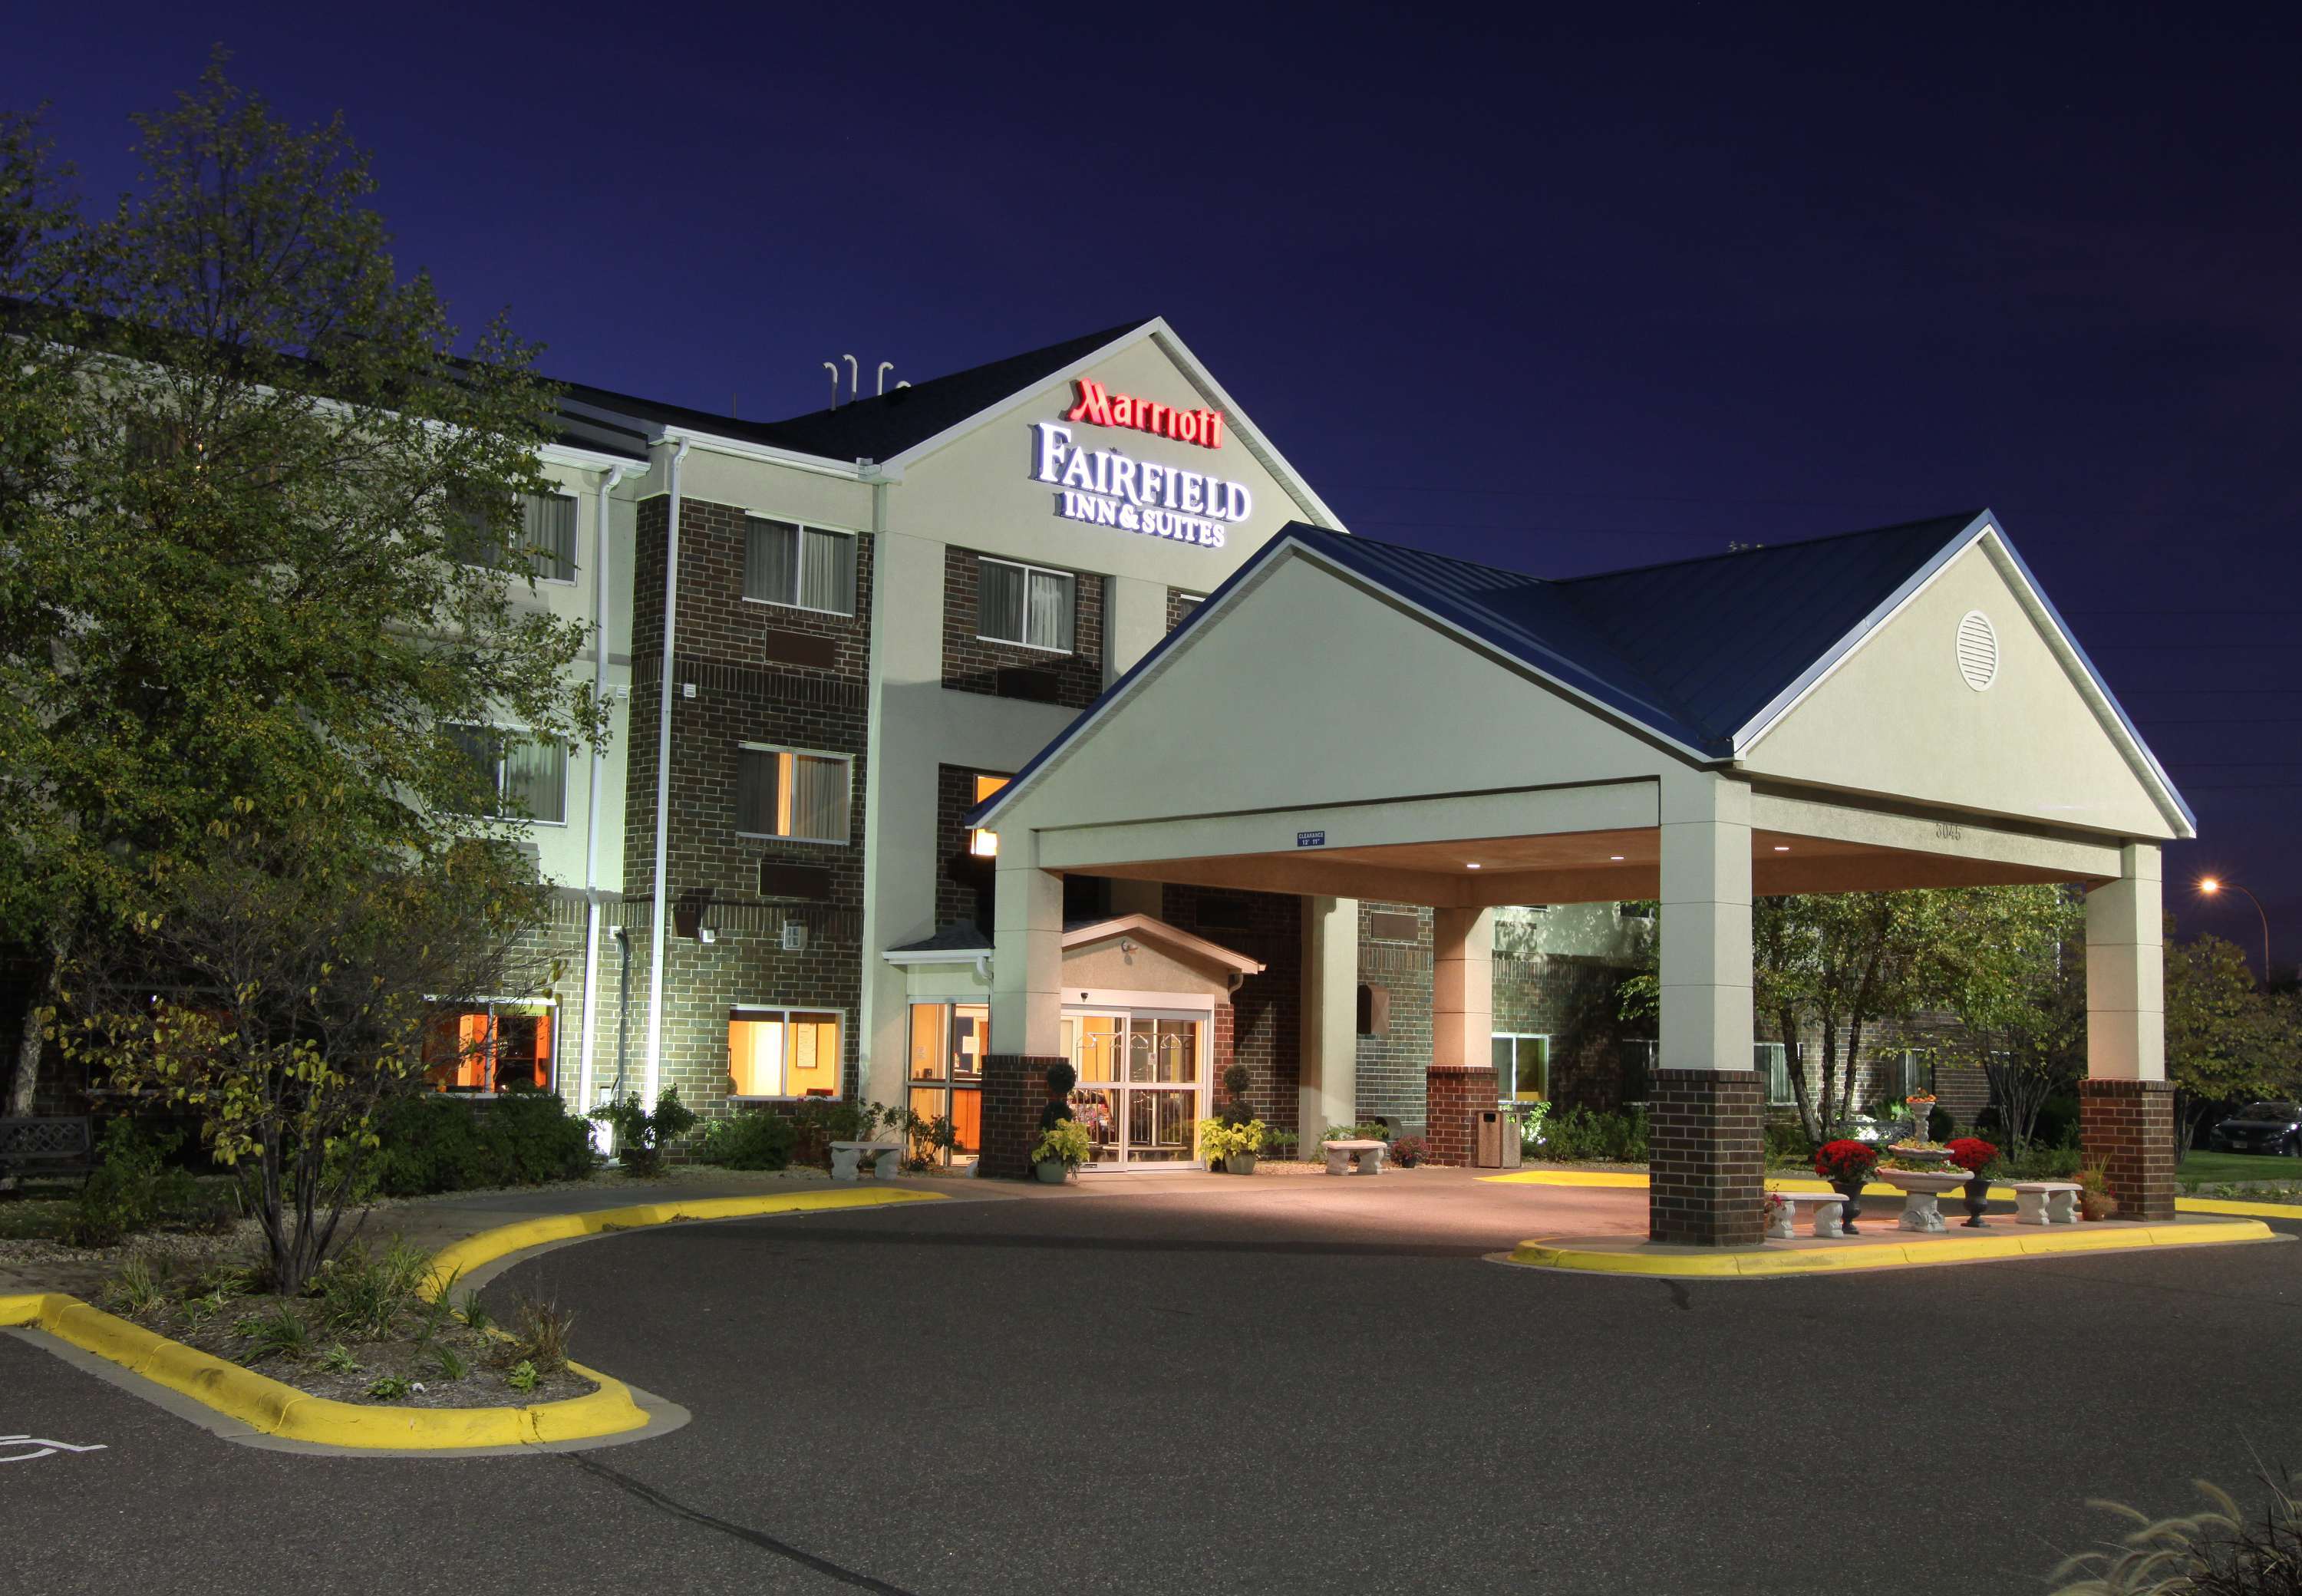 Photo of Fairfield Inn & Suites by Marriott Minneapolis St. Paul/Roseville, Roseville, MN